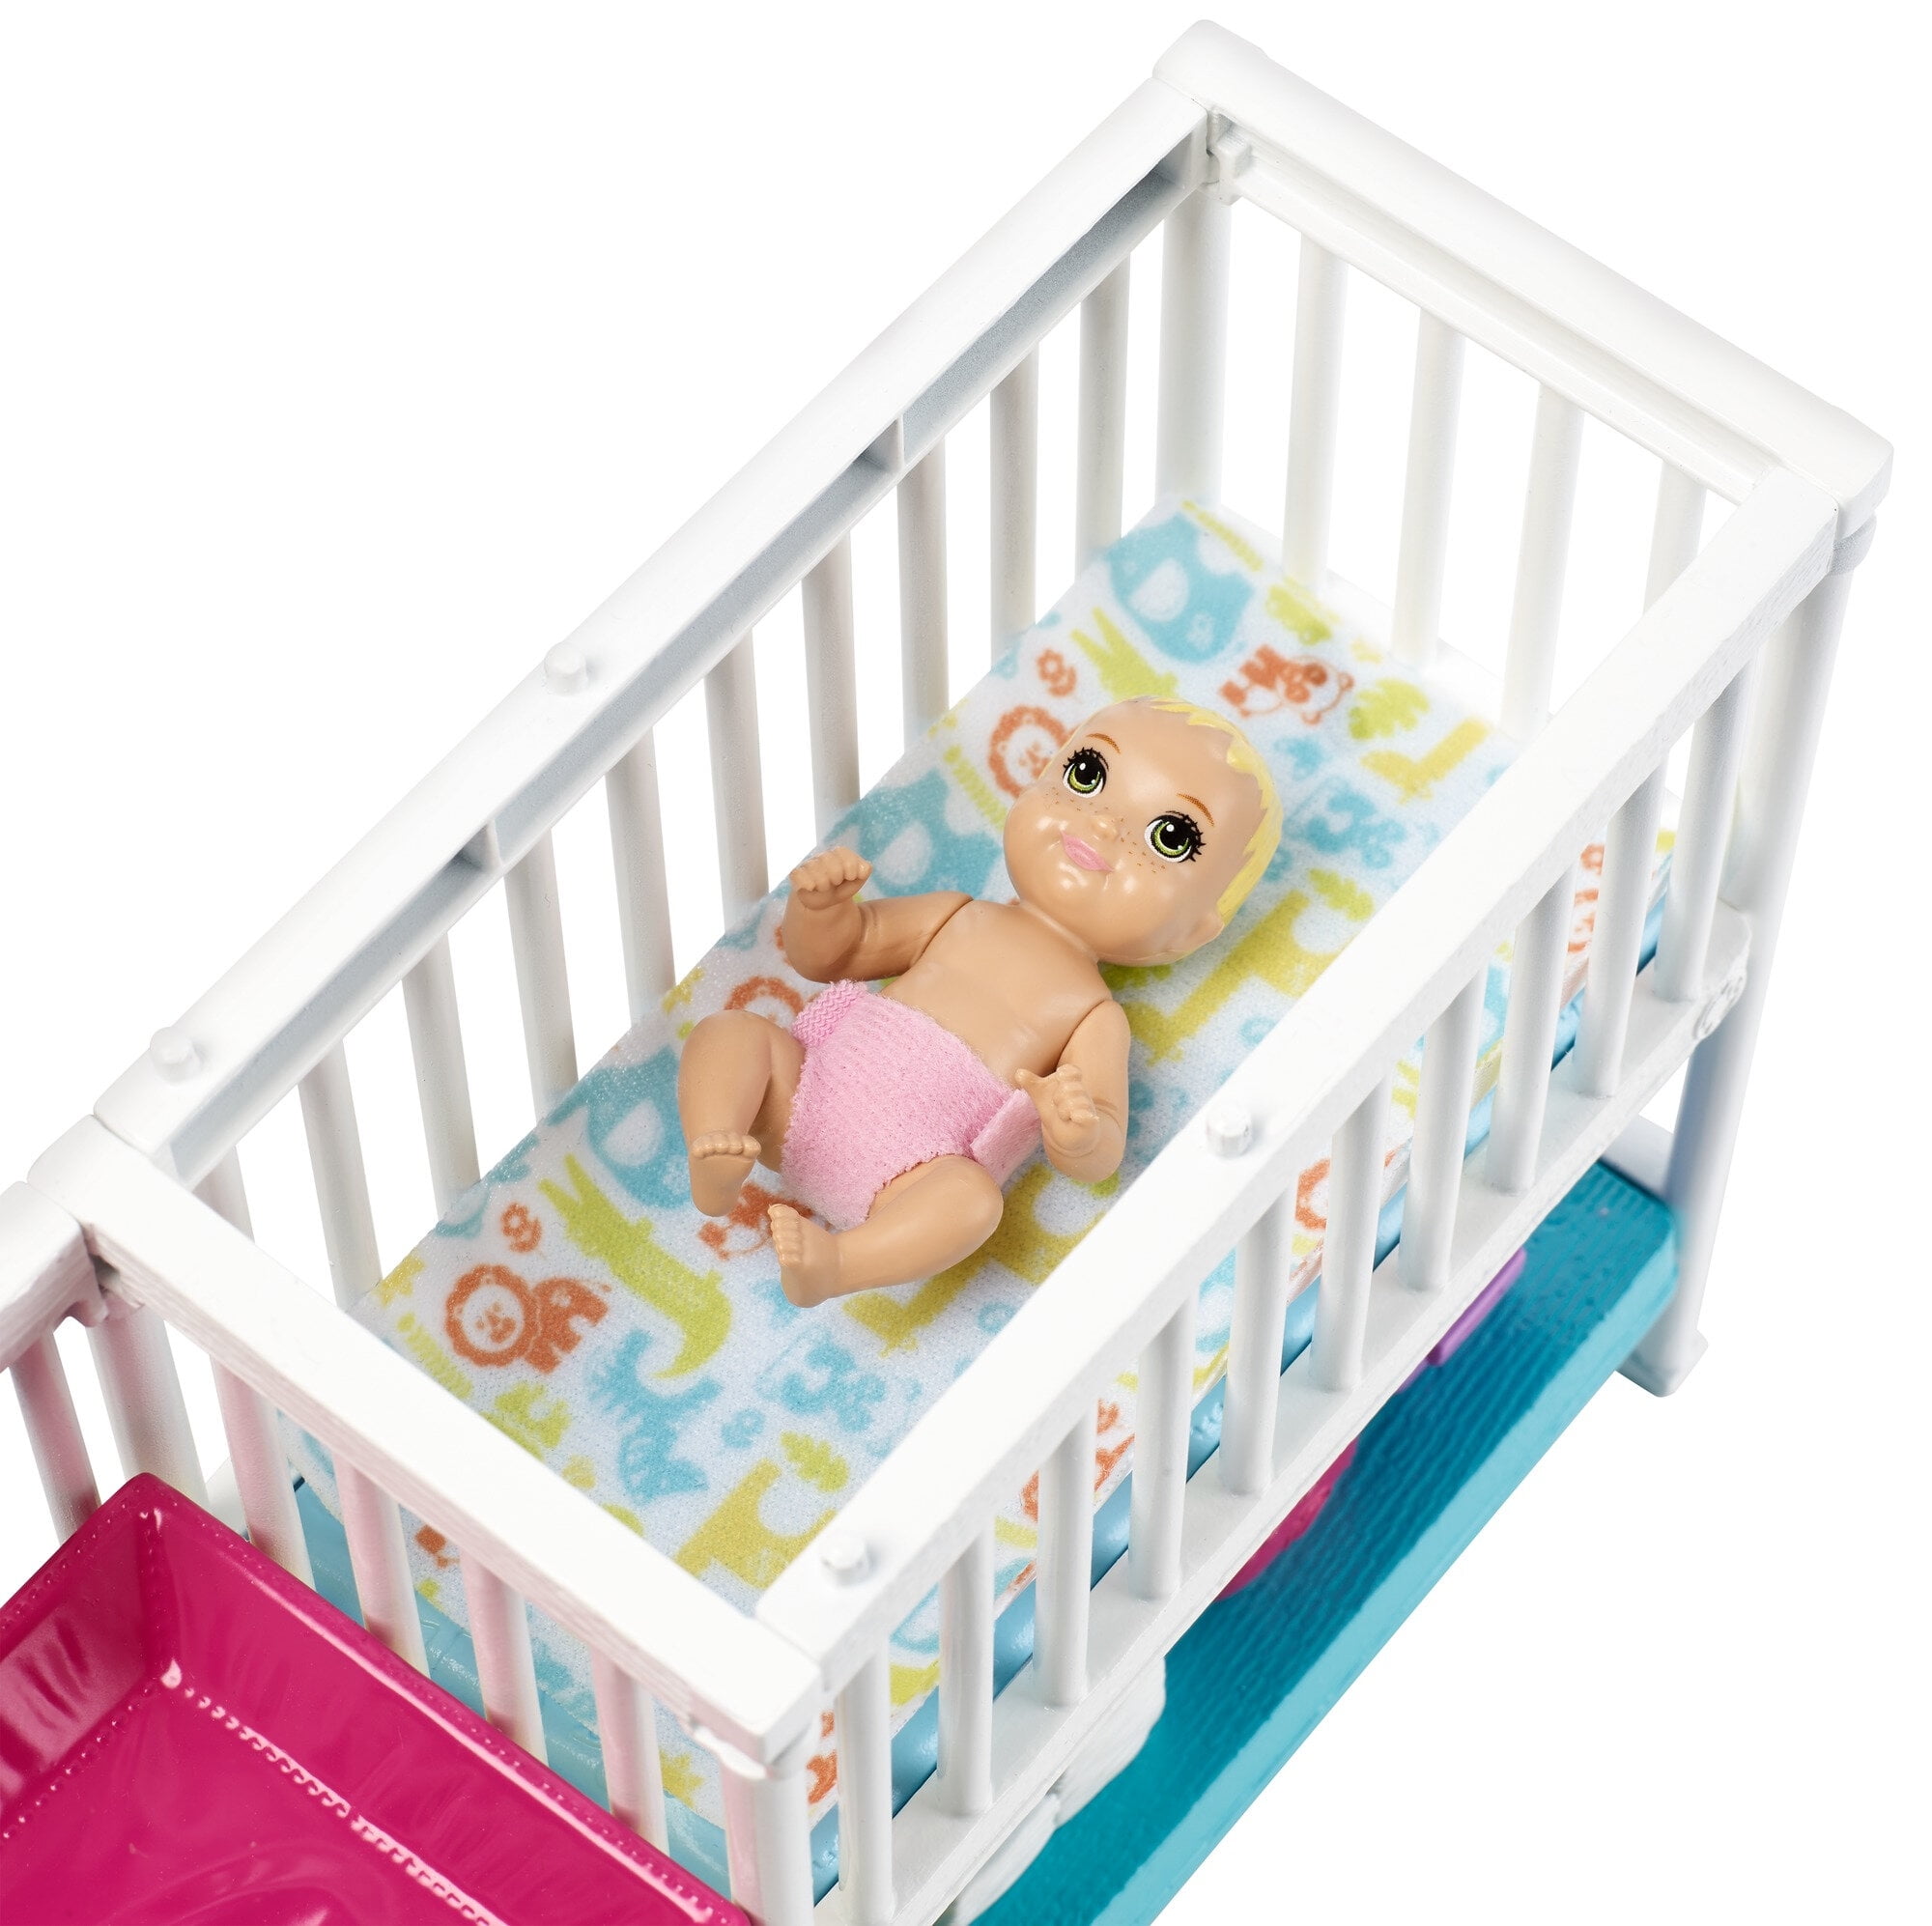 Crib Doll 2 Baby Dolls Barbie Nursery Playset with Skipper Babysitters Inc 